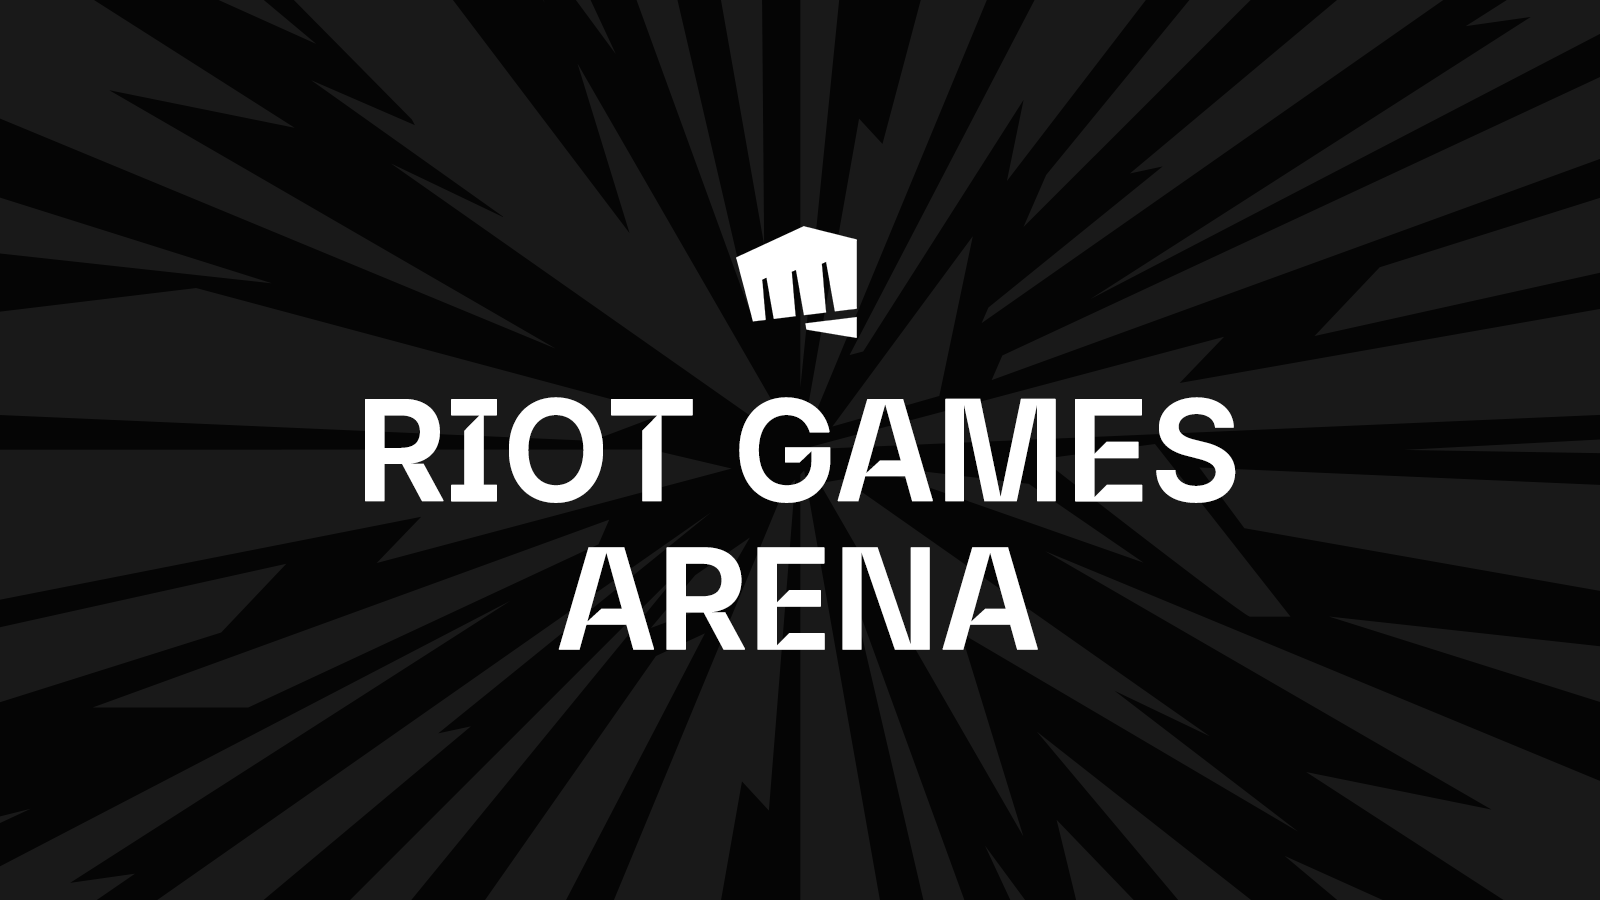 Dalam sebuah surat kepada karyawan yang dibagikan kepada publik, CEO Riot Games, A. Dylan Jadeja, menjelaskan bahwa PHK ini terjadi karena sejak tahun 2019, Riot Games telah membuat “sejumlah pertaruhan besar”, “memperluas portofolio kami”, dan berkembang “dengan cepat”, dengan ukuran perusahaan yang berlipat ganda hanya dalam waktu “beberapa tahun”.